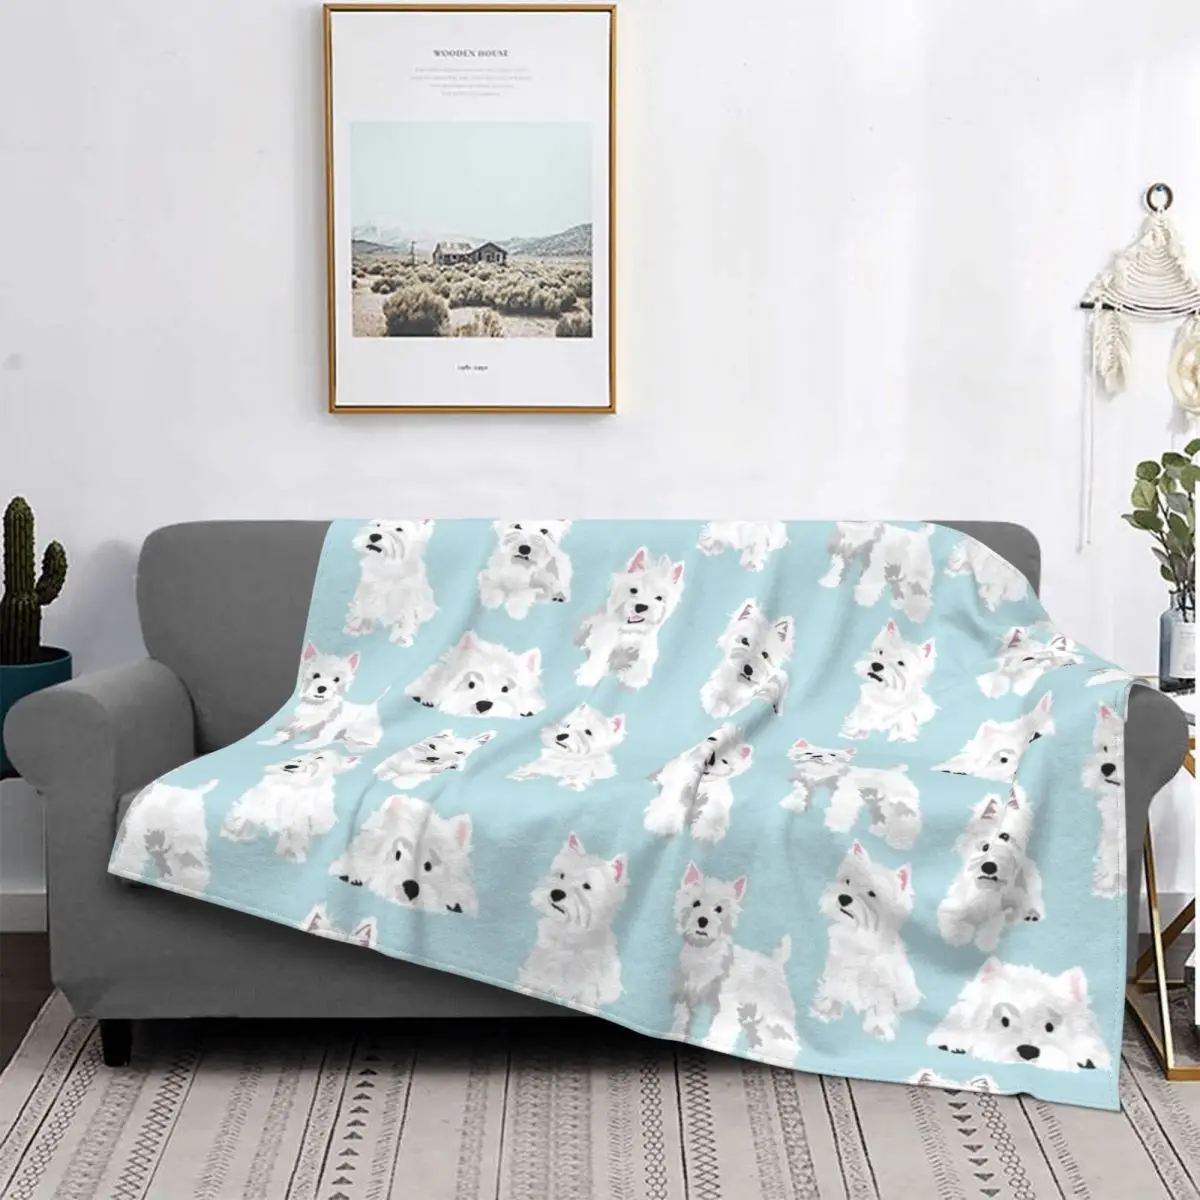 

Westie Cute Puppy Blankets West Highland Terrier Dog Flannel Throw Blanket Airplane Travel Printed Soft Warm Bedspread